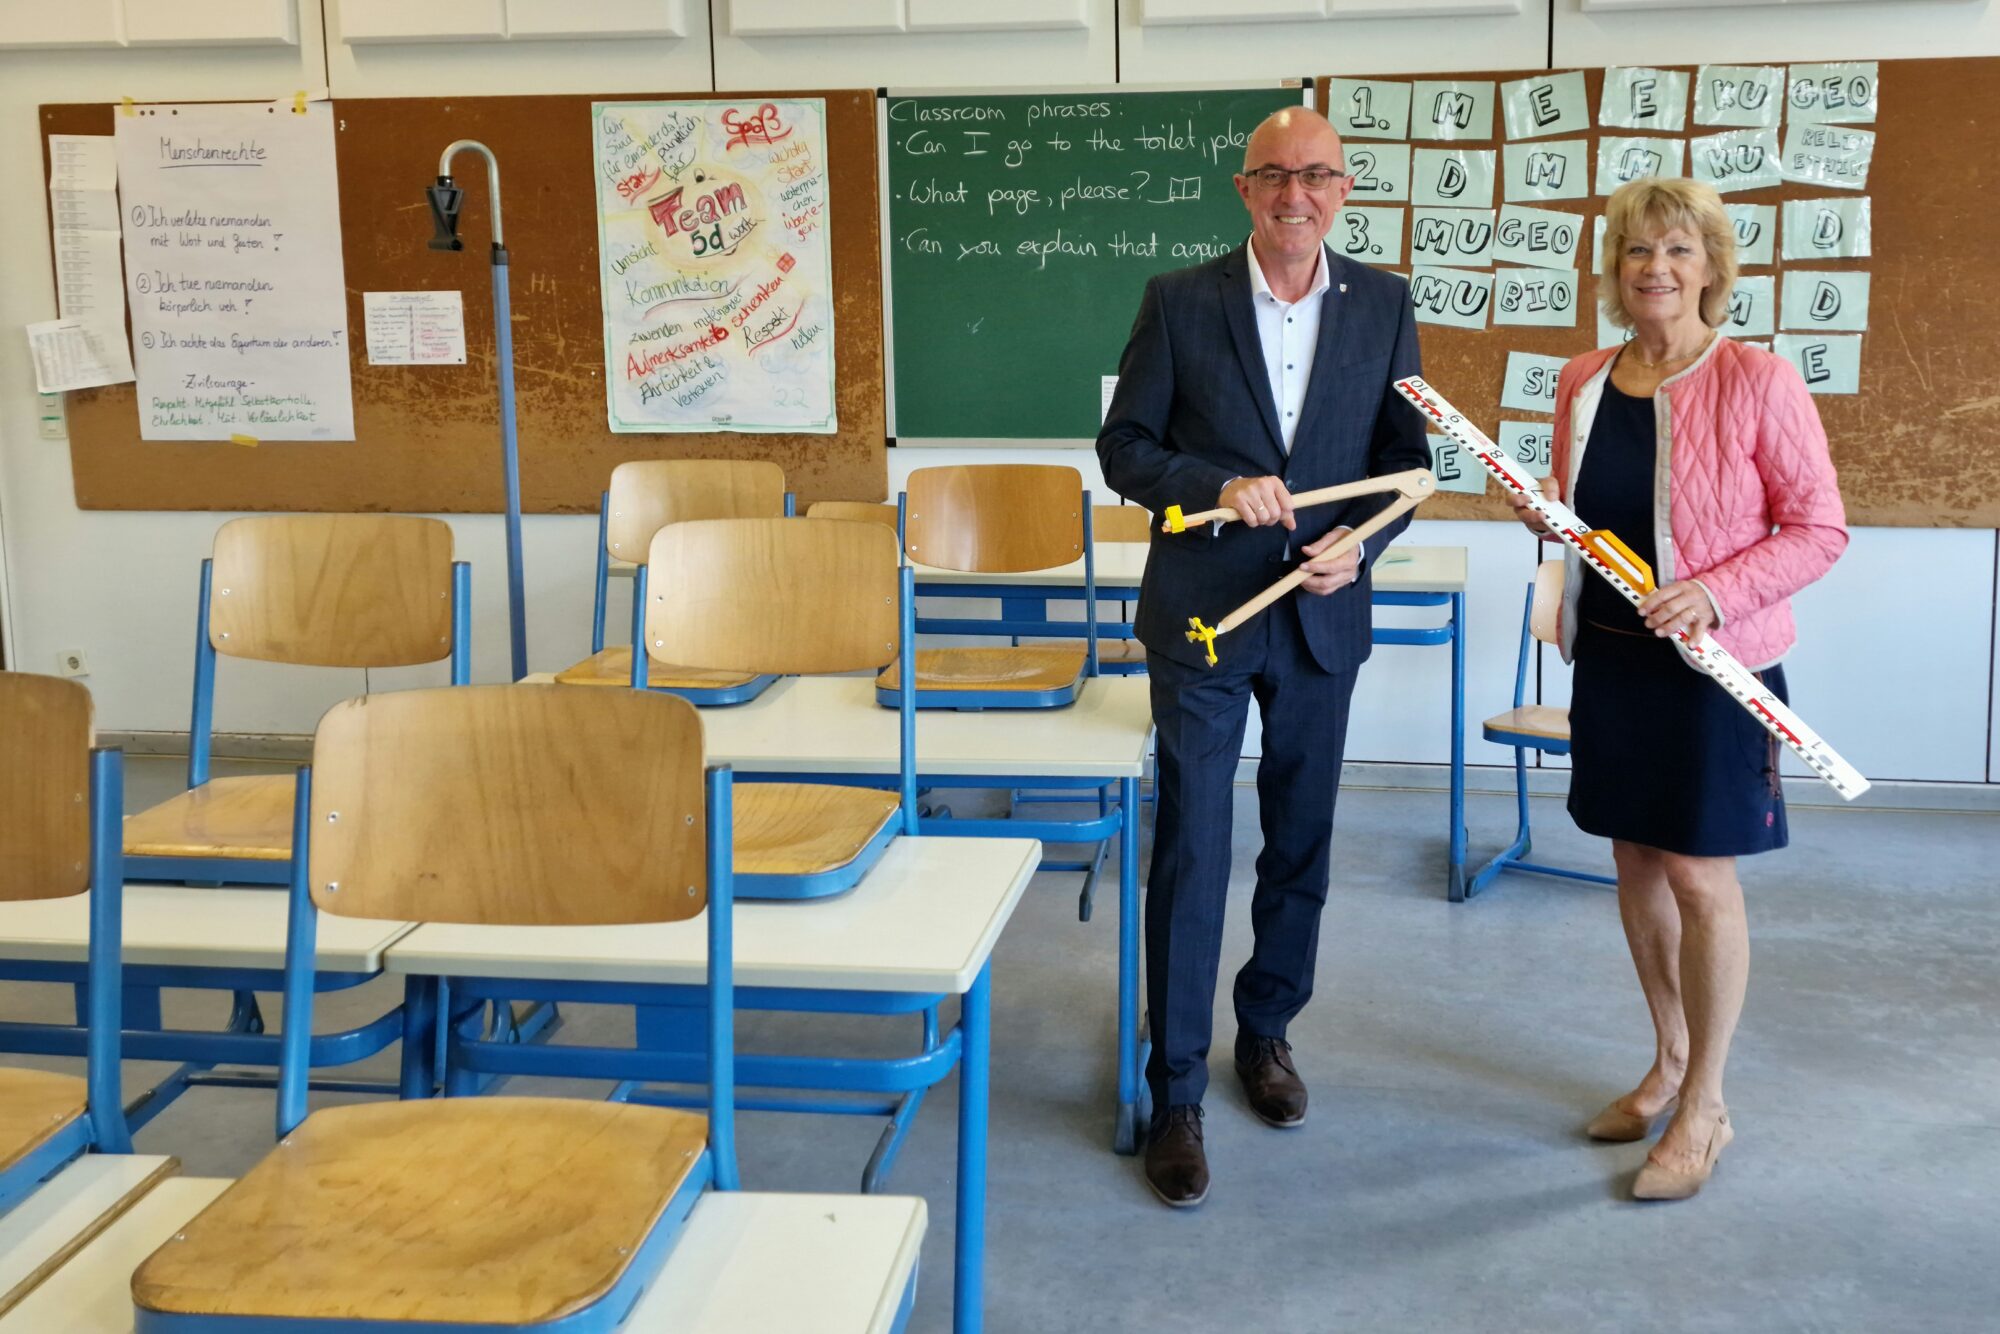 Links Landrat Dr. Klaus Metzger, rechts daneben die Vorsitzende der Humanitas Aichach. Beide stehen in einem Klassenzimmer der Realschule.